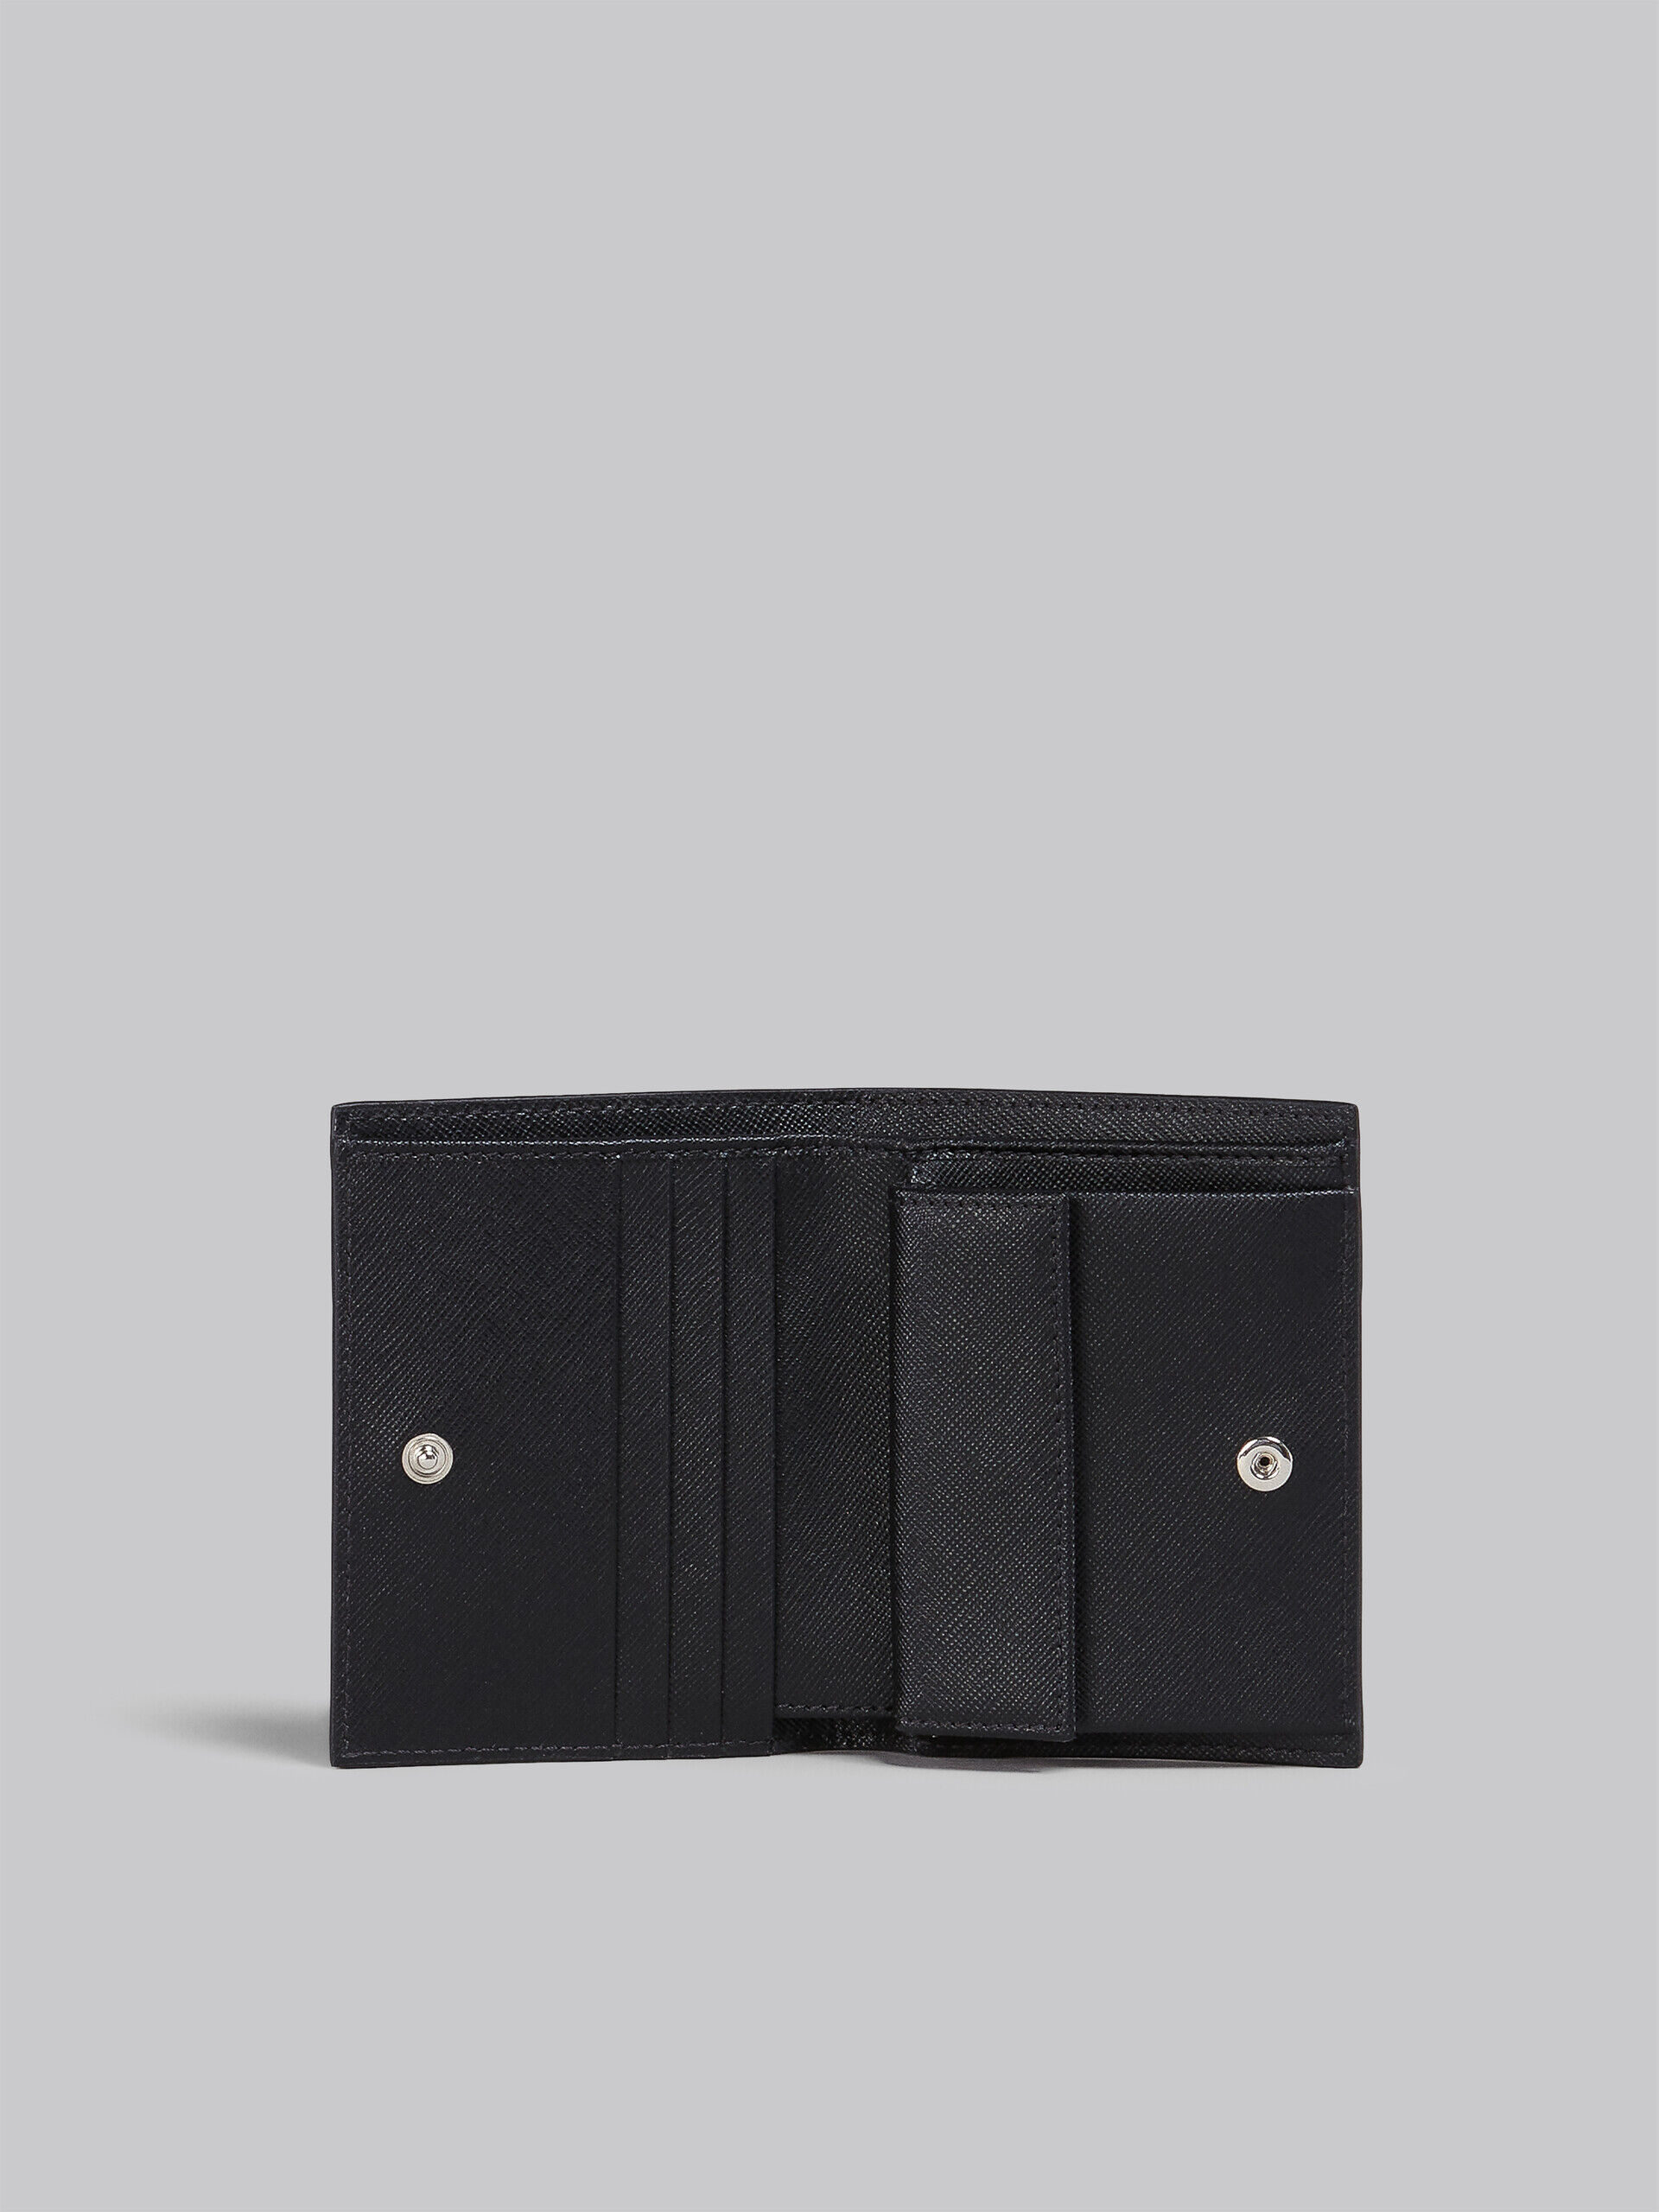 ブラック サフィアーノカーフレザー製 二つ折り財布財布